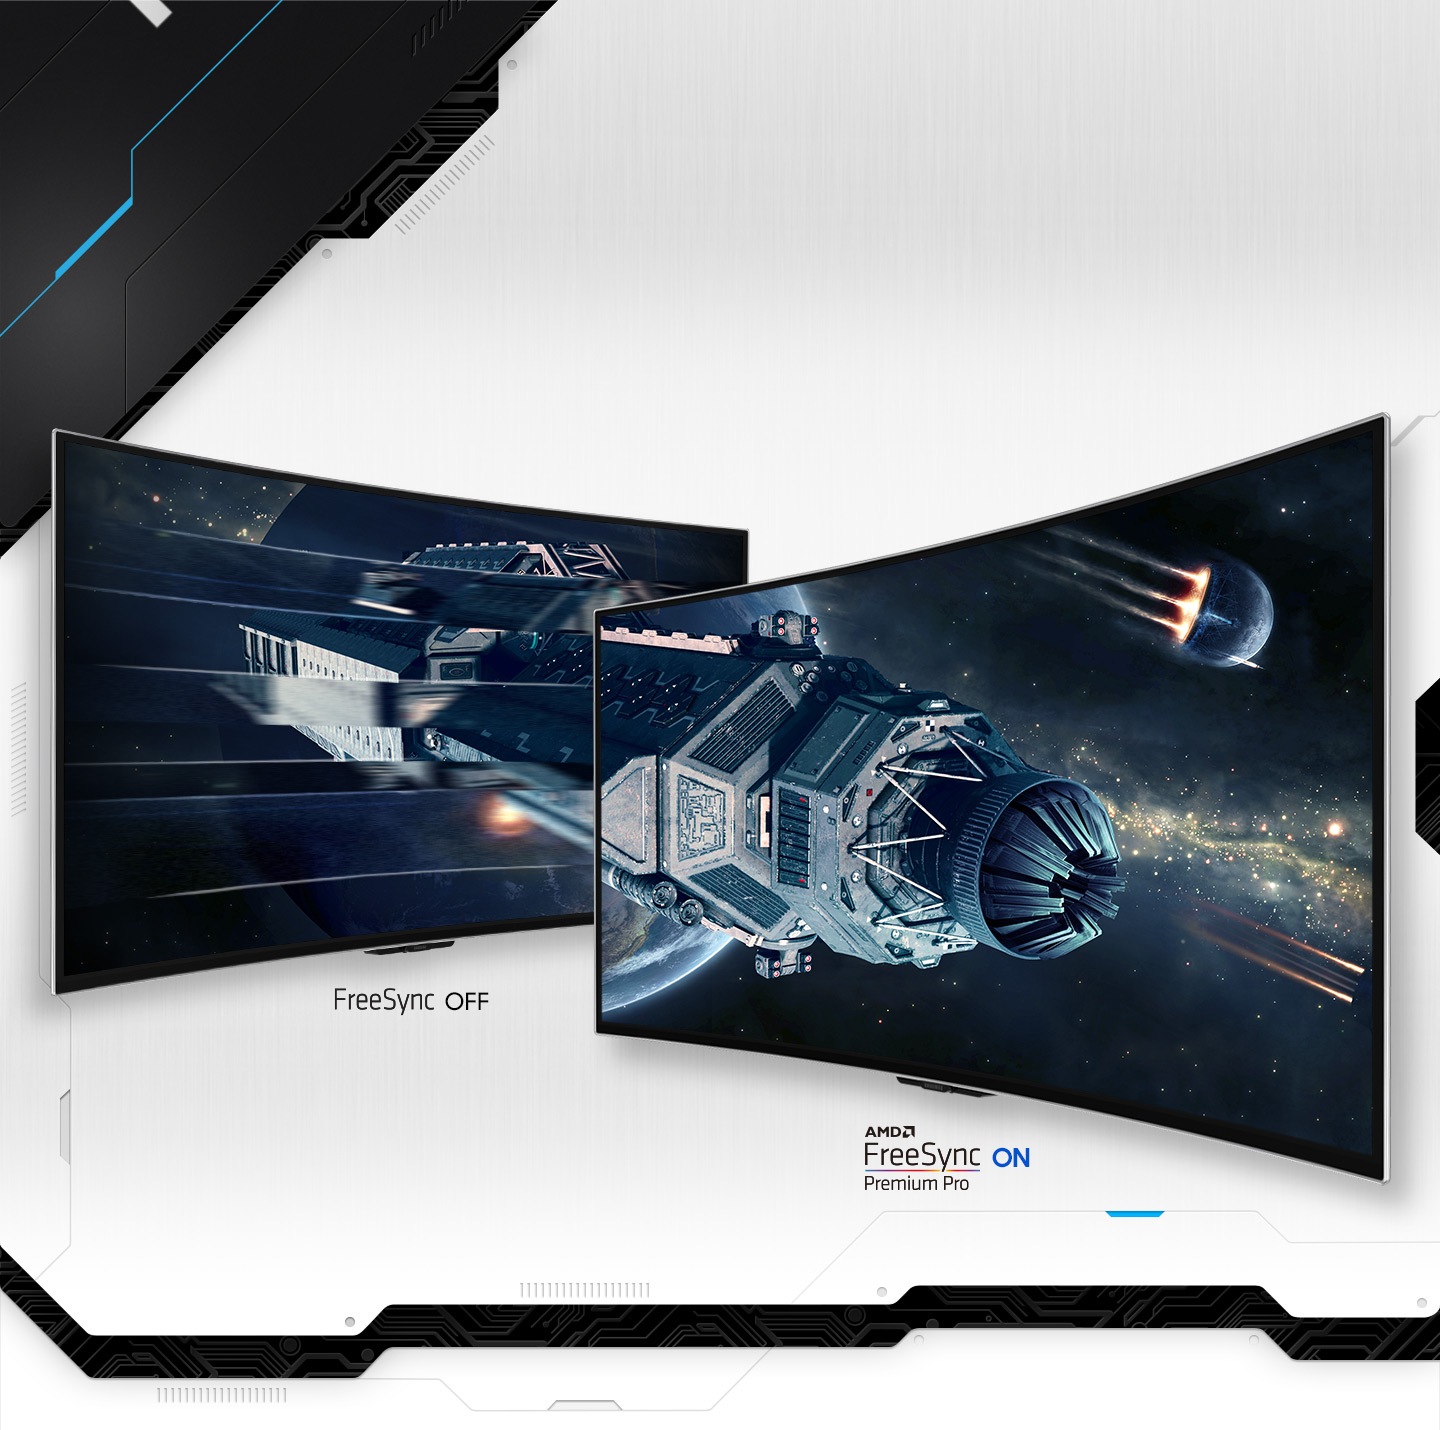 На двух мониторах Odyssey, тот, что справа, частично находится перед тем, что слева. На экране слева начинается сцена космического корабля, путешествующего через поле астероидов, и продолжается на экран справа. Космический корабль на левом экране размыт, под ним видно текст «FreeSync OFF», а на правом экране изображение четкое, с текстом «AMD FreeSync Premium Pro ON».